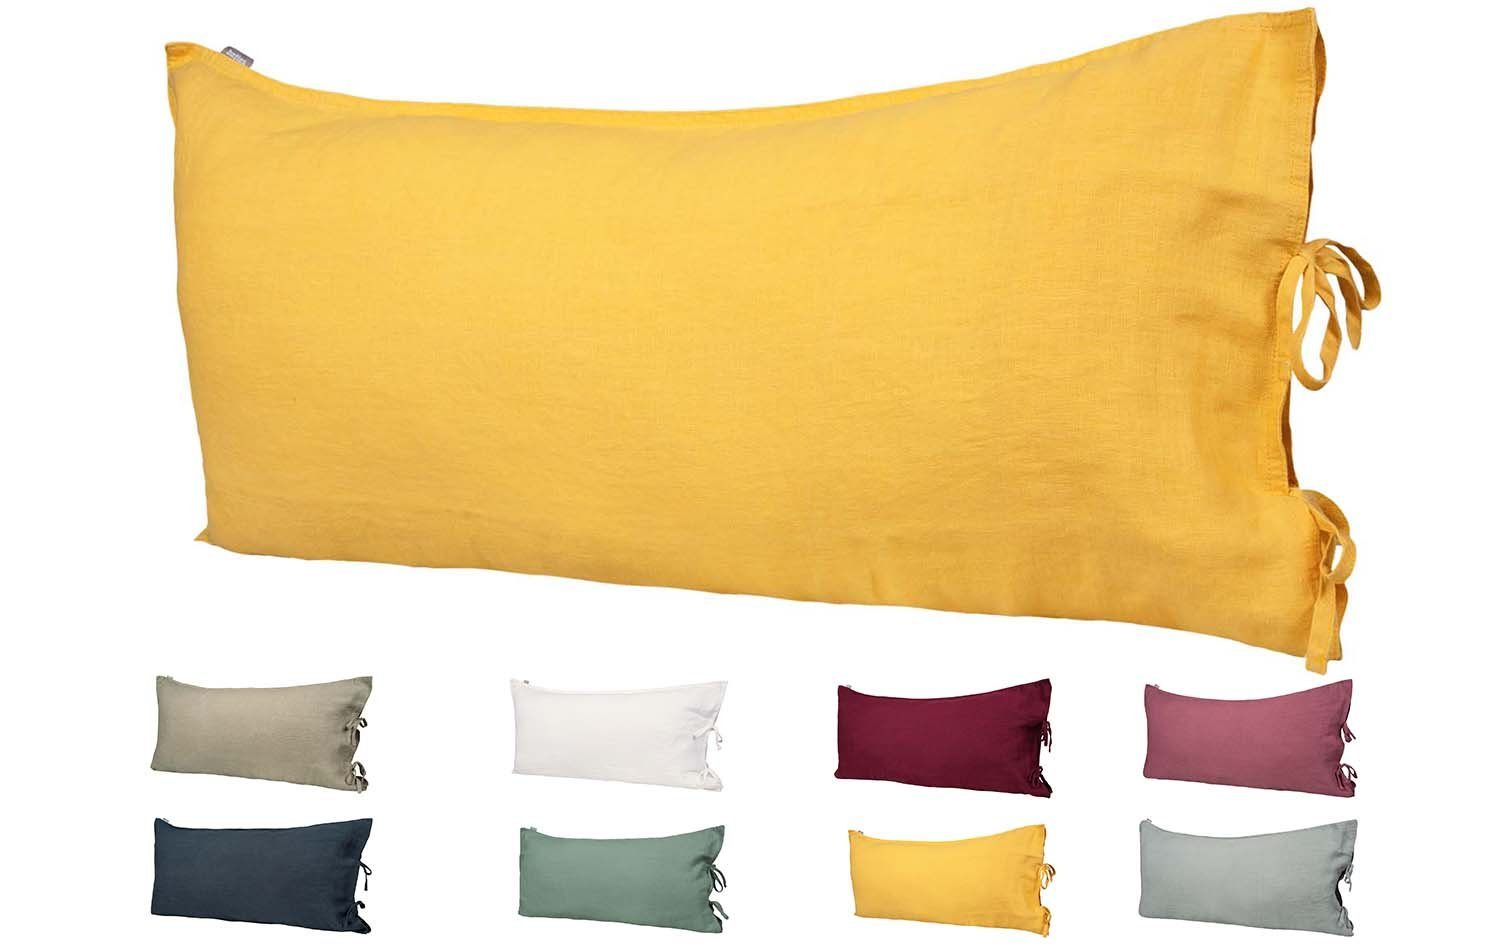 Kissenbezug Leinen, beties (1 Stück), Leinen Kissenhülle ca. 40x80 cm (zitronen-gelb)